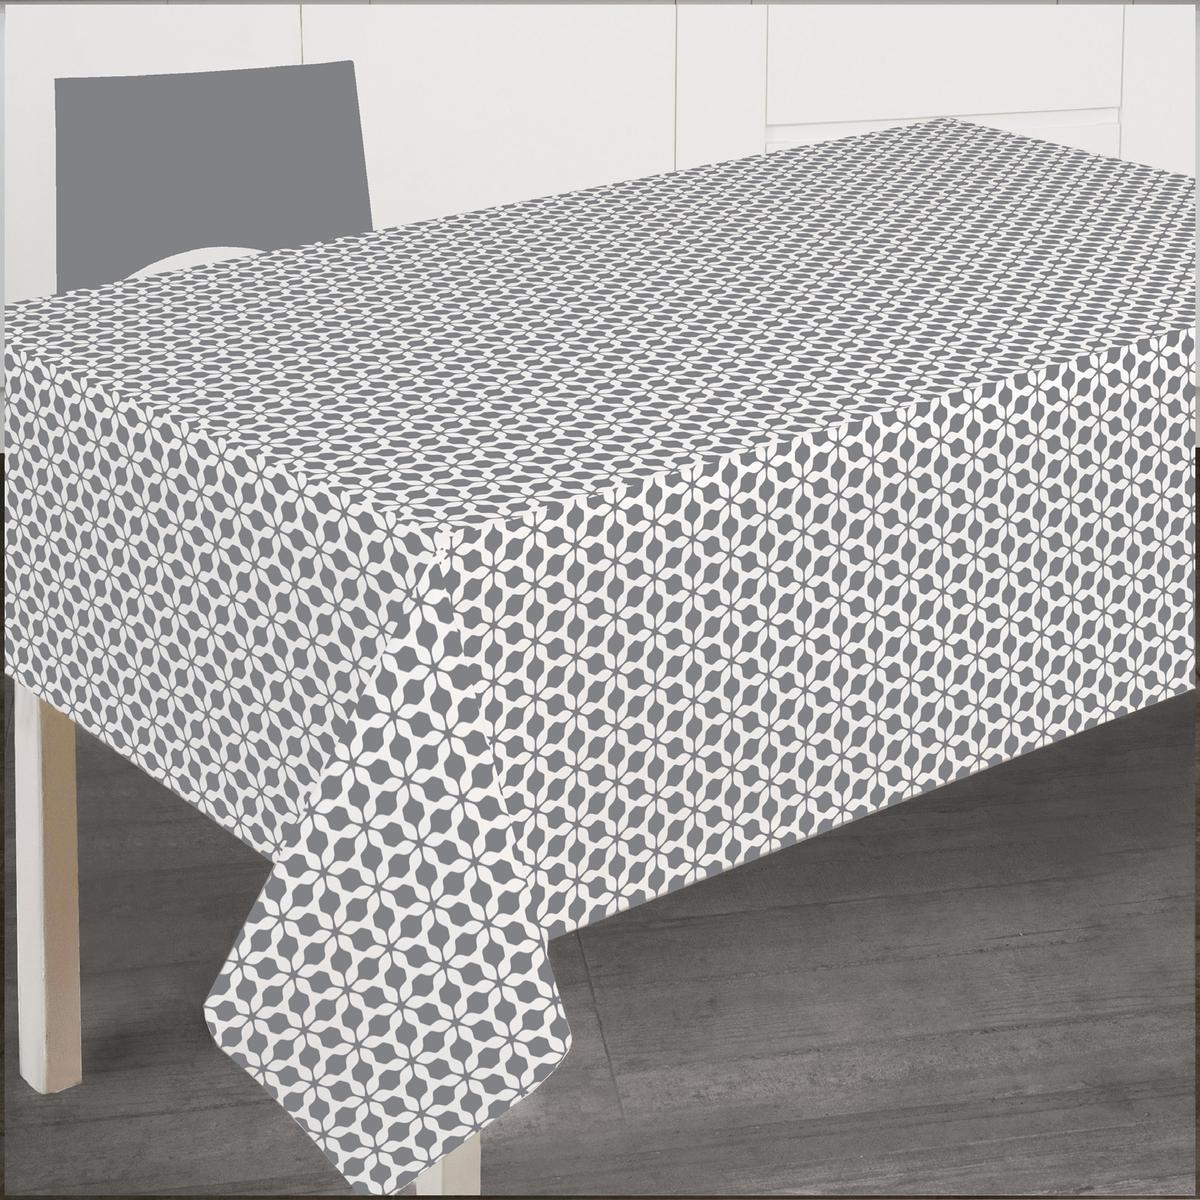 Nappe rectangulaire à motifs cristallins - L 300 x l 145 cm - Gris, blanc